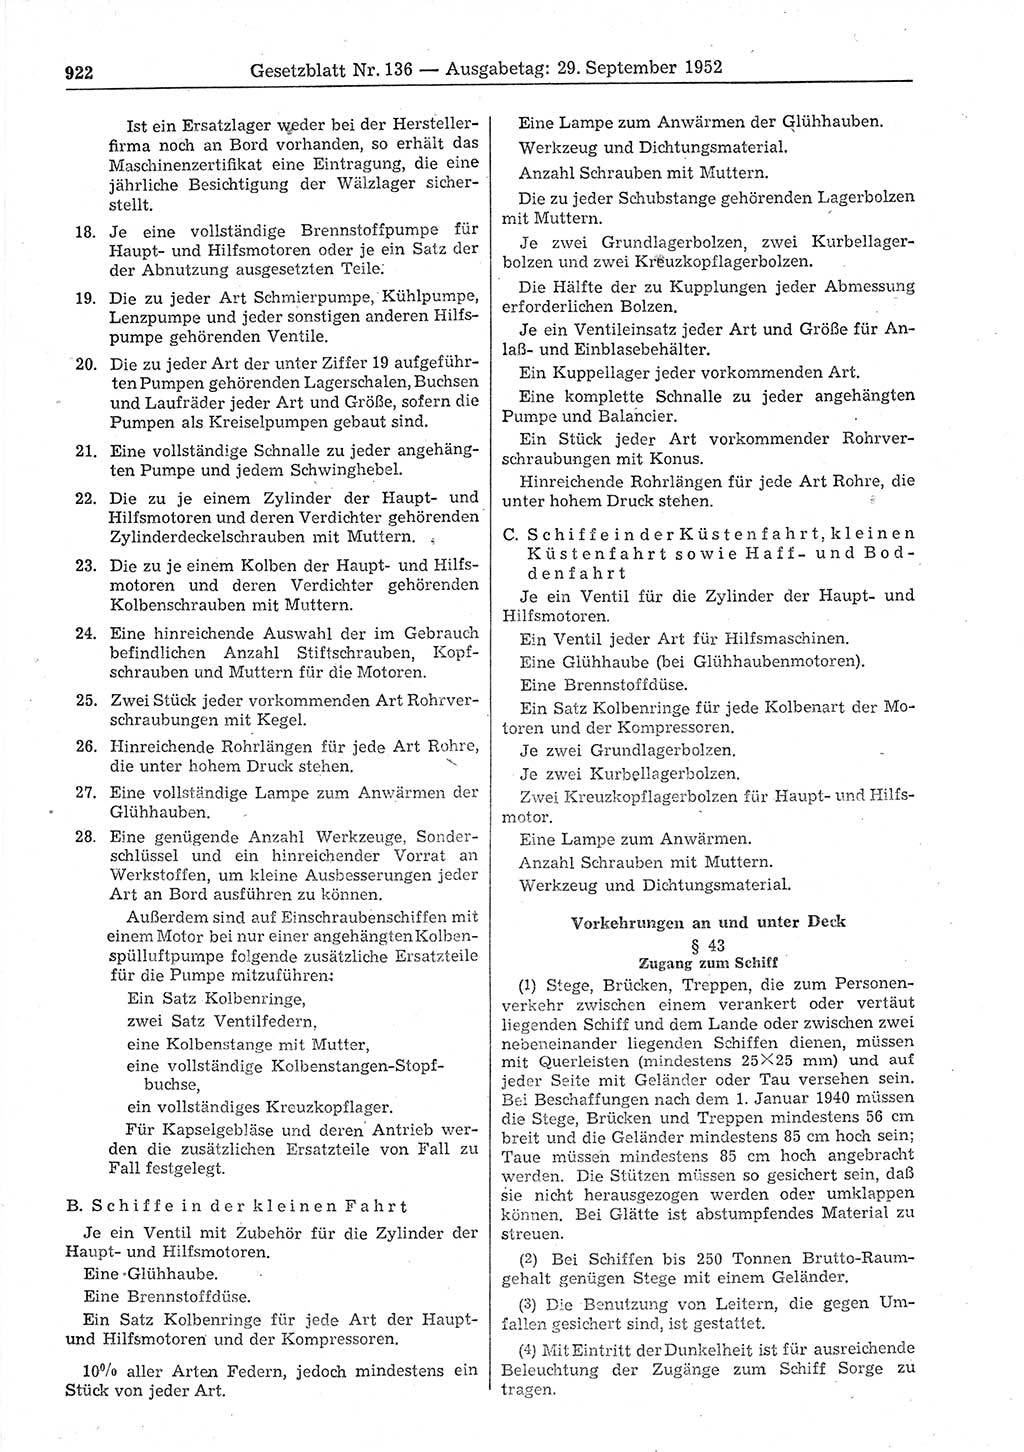 Gesetzblatt (GBl.) der Deutschen Demokratischen Republik (DDR) 1952, Seite 922 (GBl. DDR 1952, S. 922)